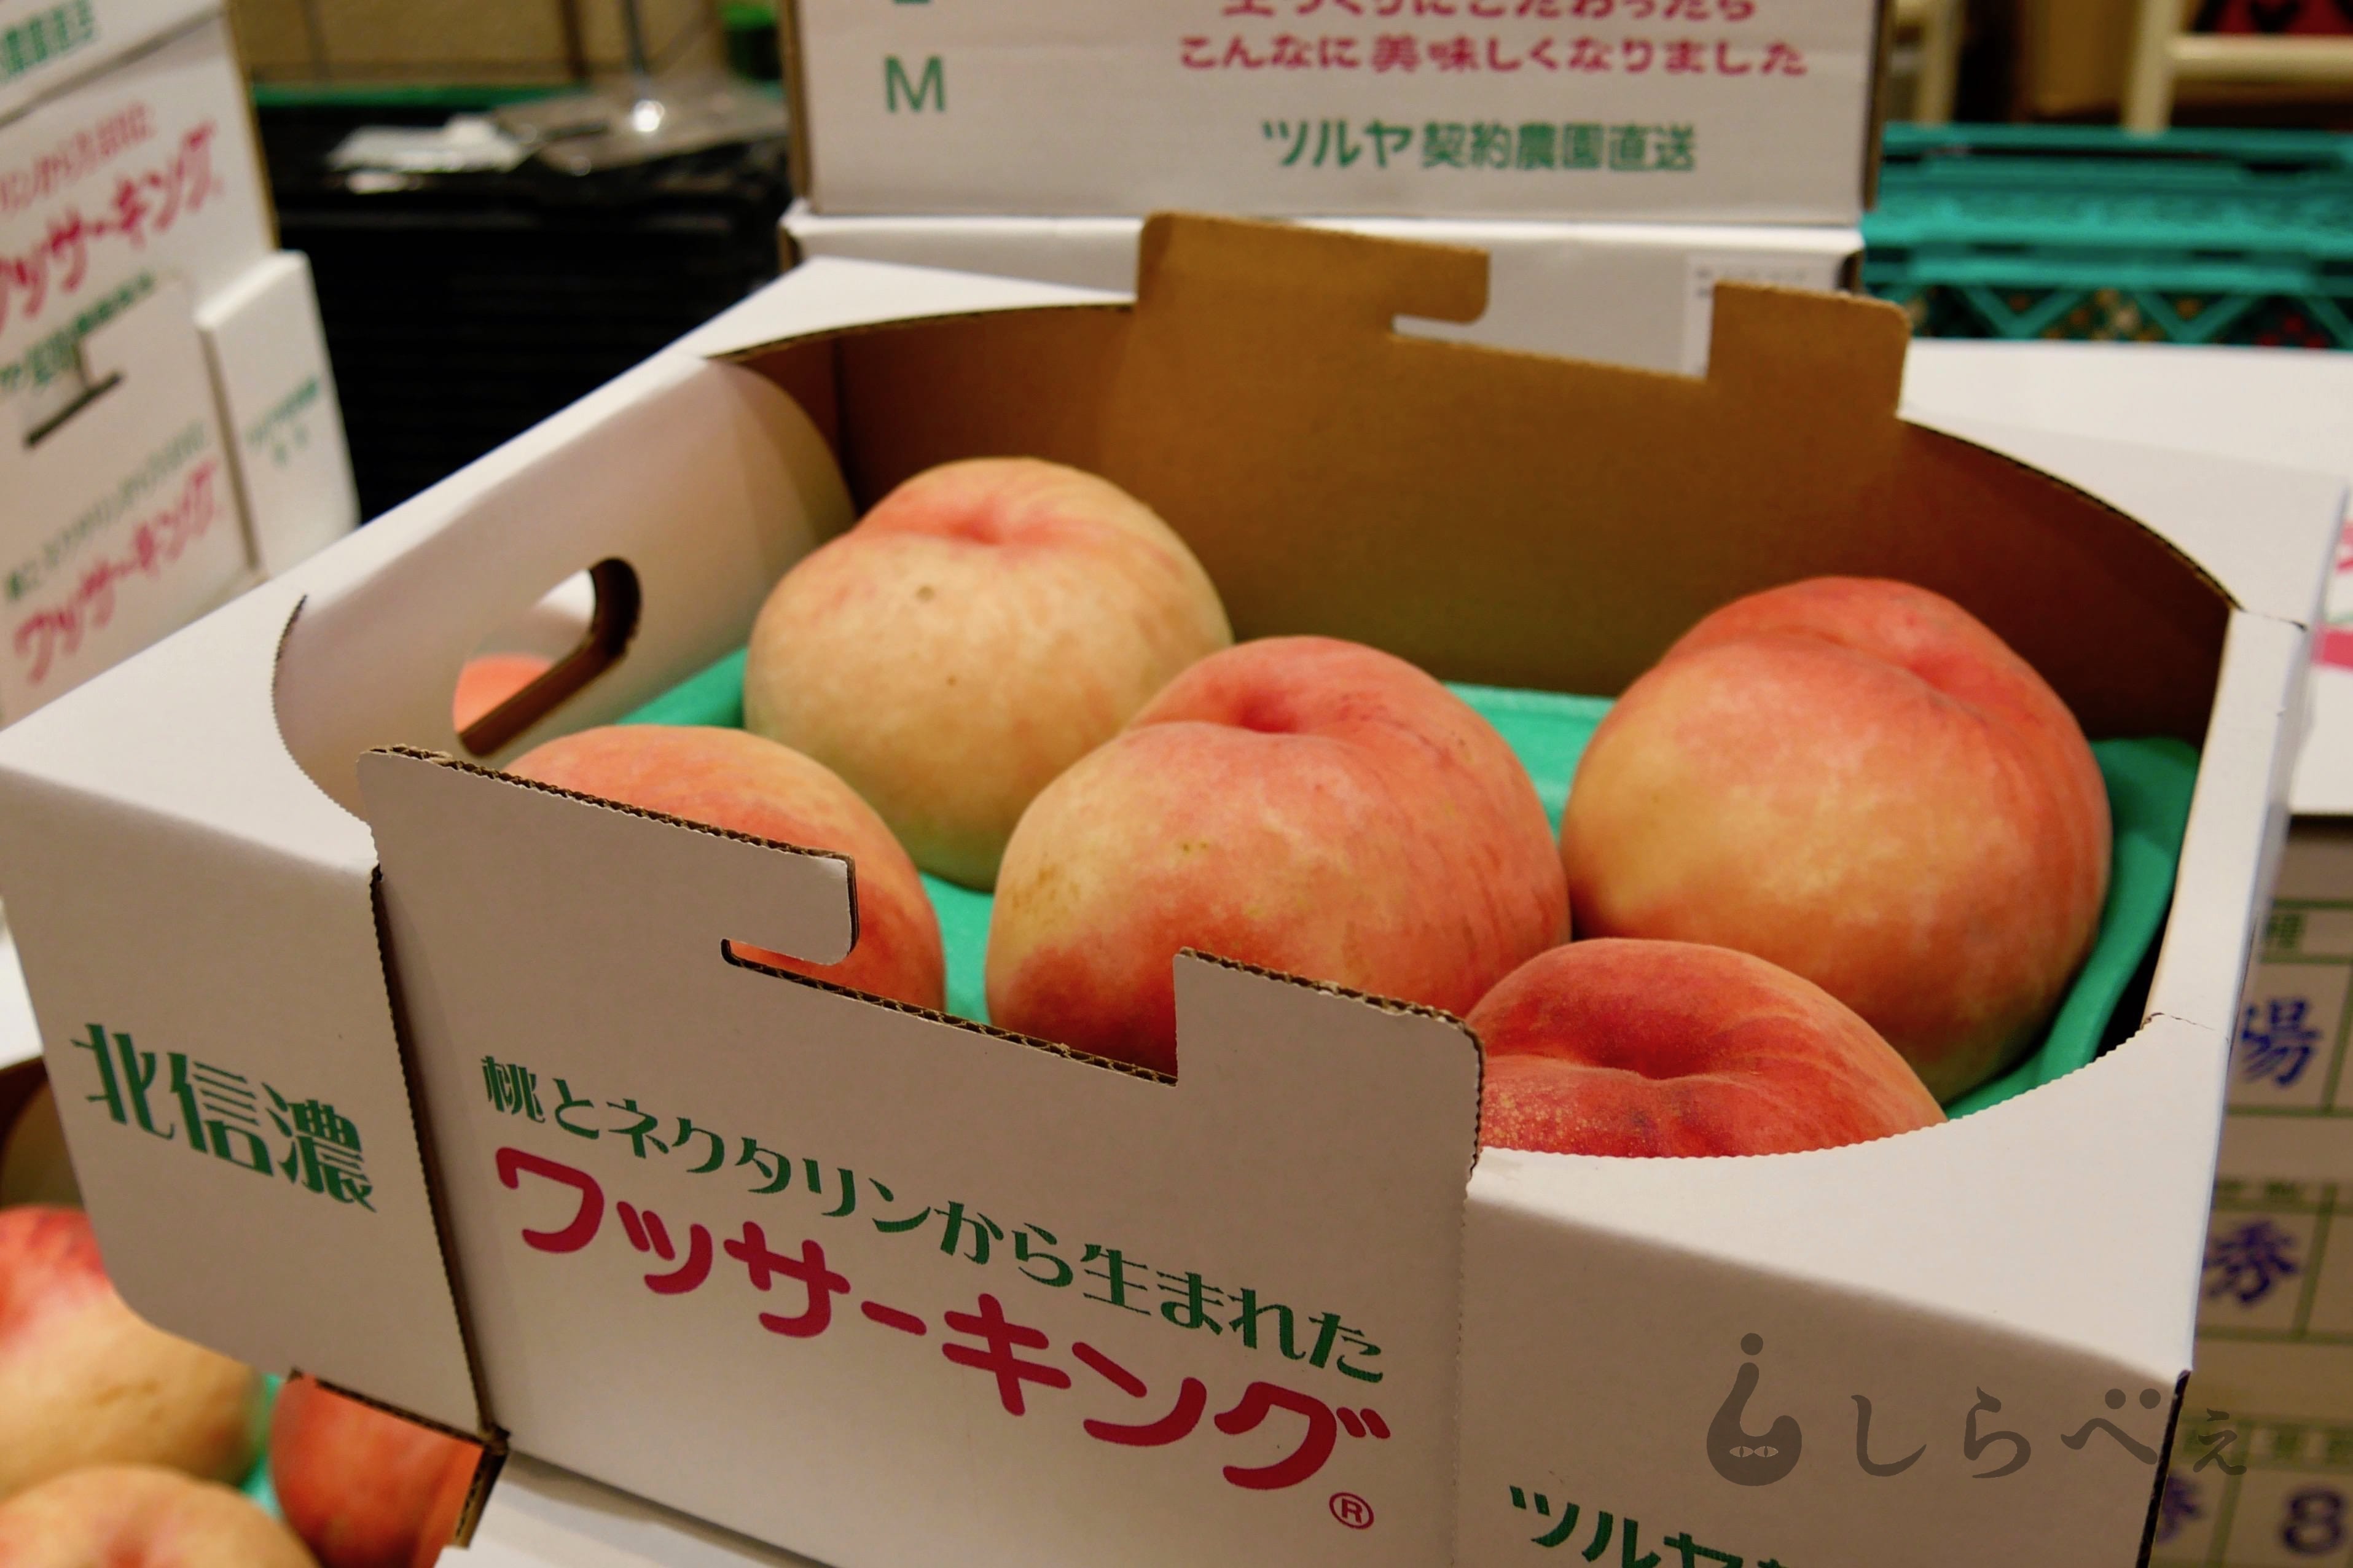 長野県の新名物 桃とネクタリンから生まれたフルーツ ワッサー が激ウマ ニュースサイトしらべぇ